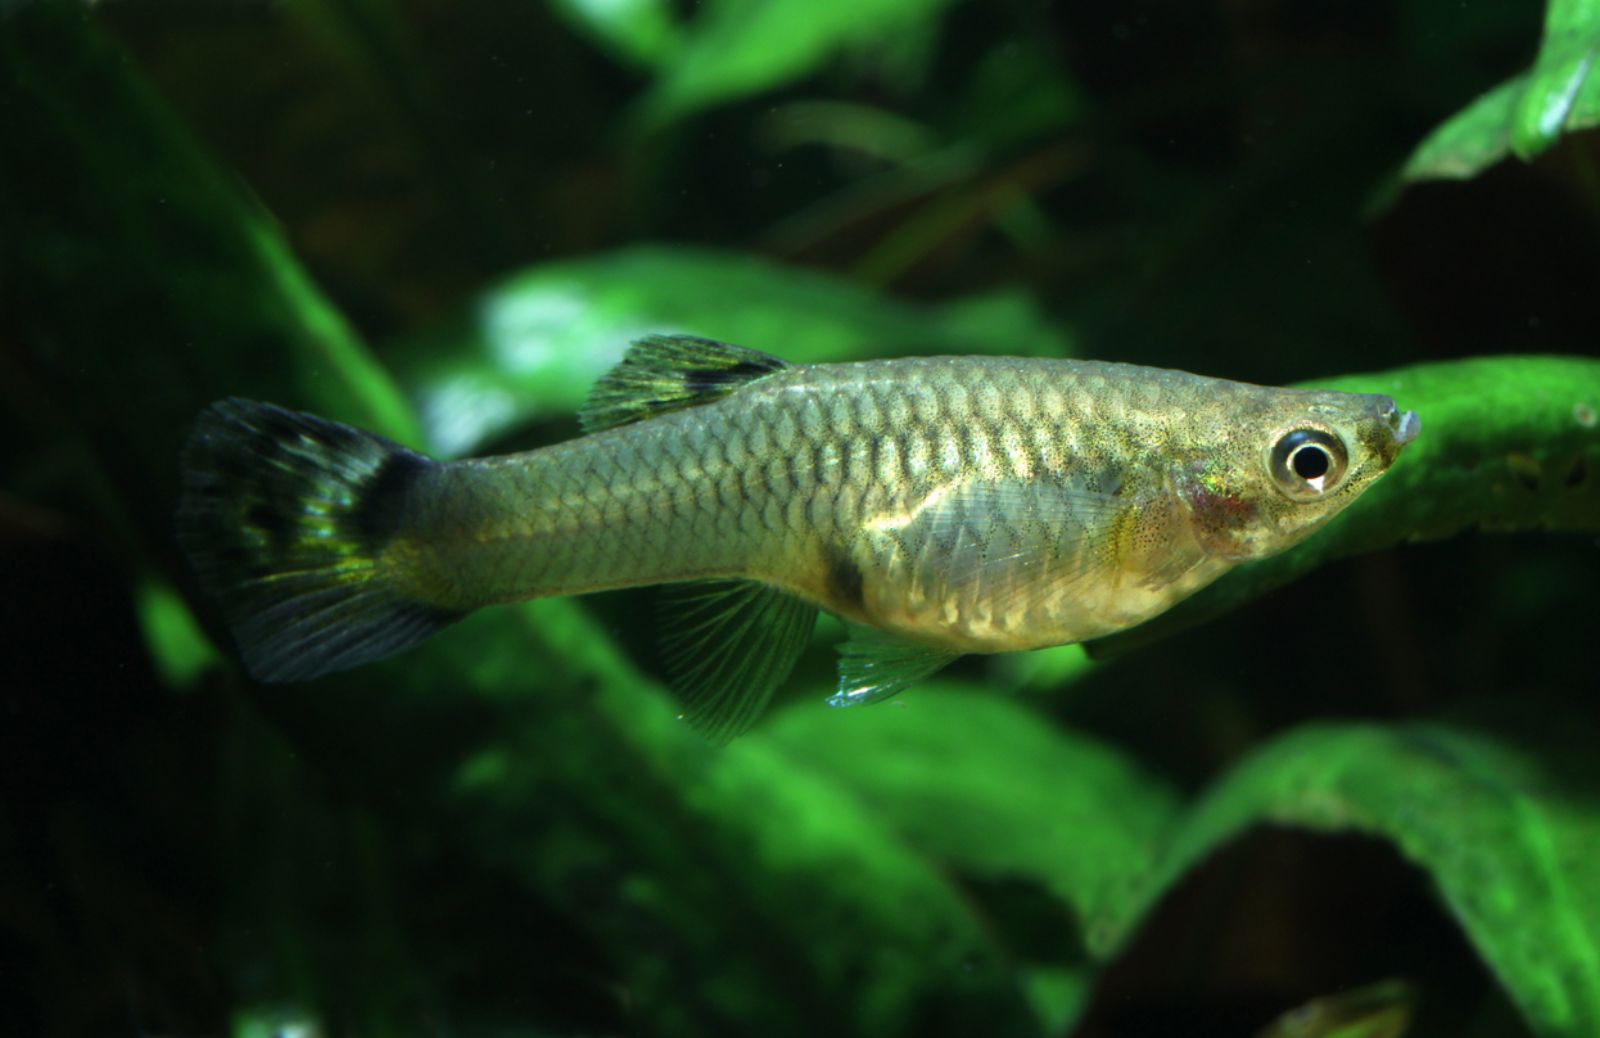 I pesci femmine Guppy nuotano meglio per sfuggire ai maschi